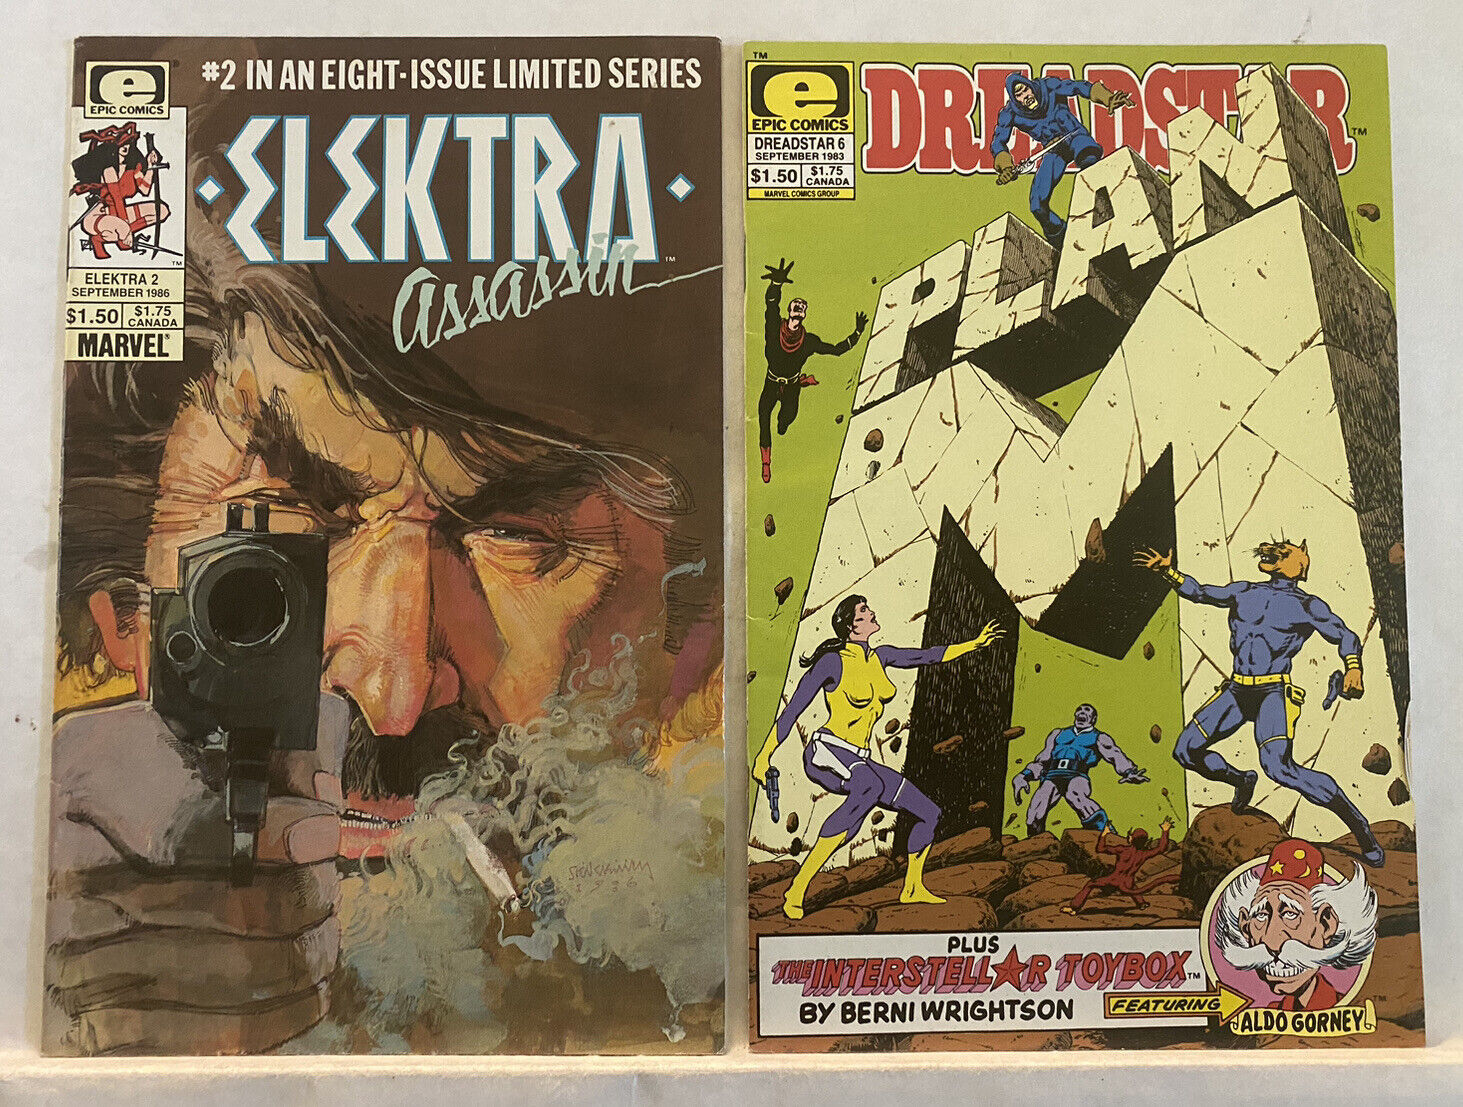 Elektra Assassin (1986) #2 by Sienkiewicz & Dreadstar #6 Wrightson Starlin (lot)